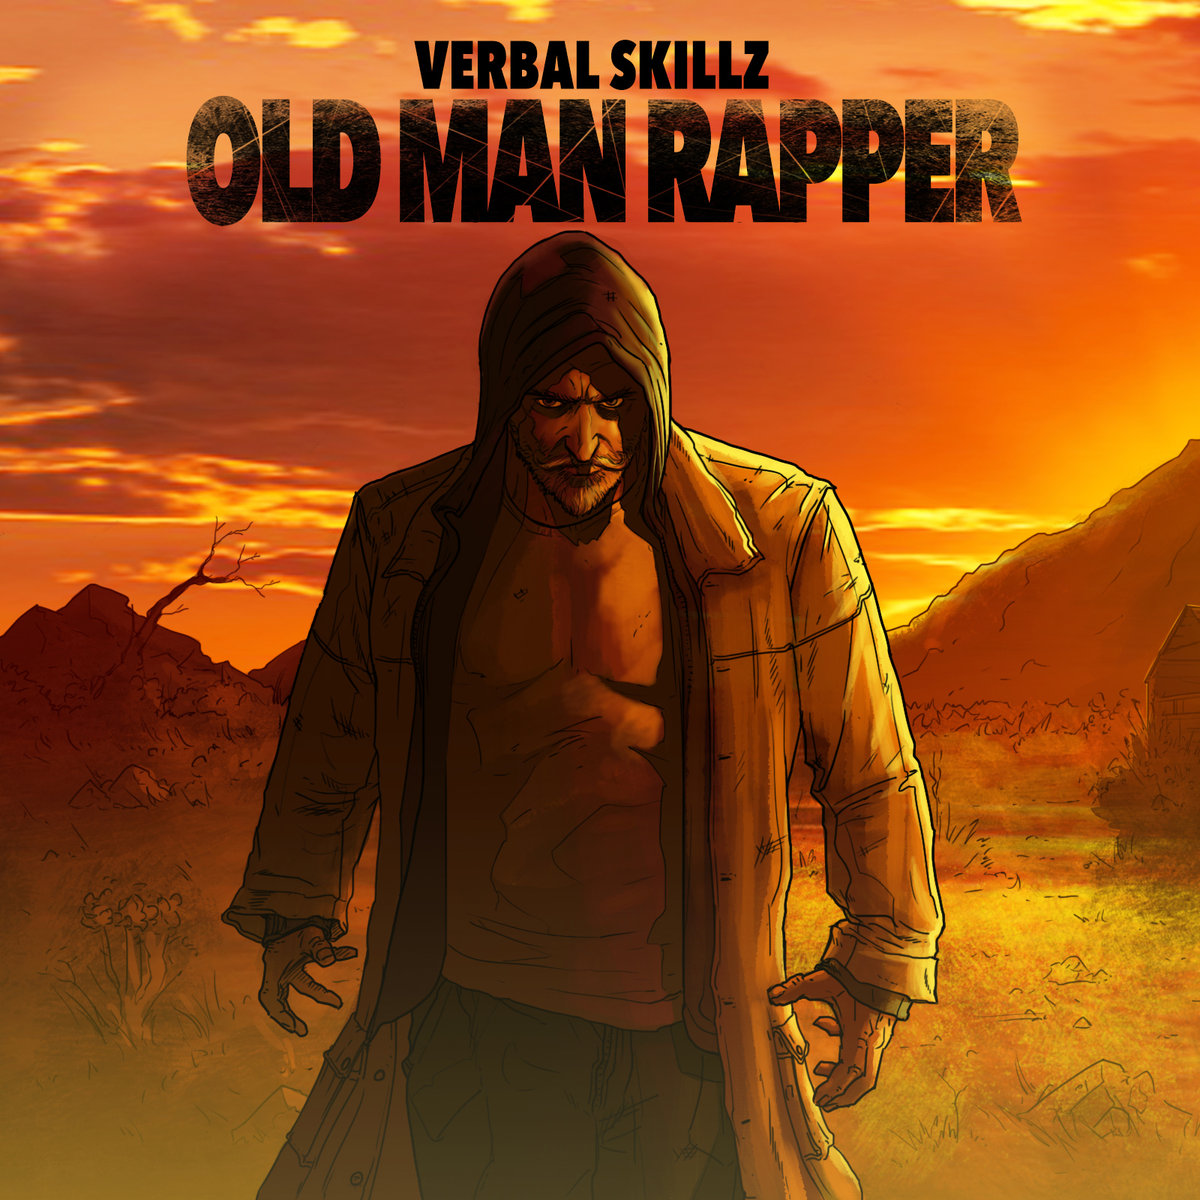 Verbal_skillz_presenta_old_man_rapper